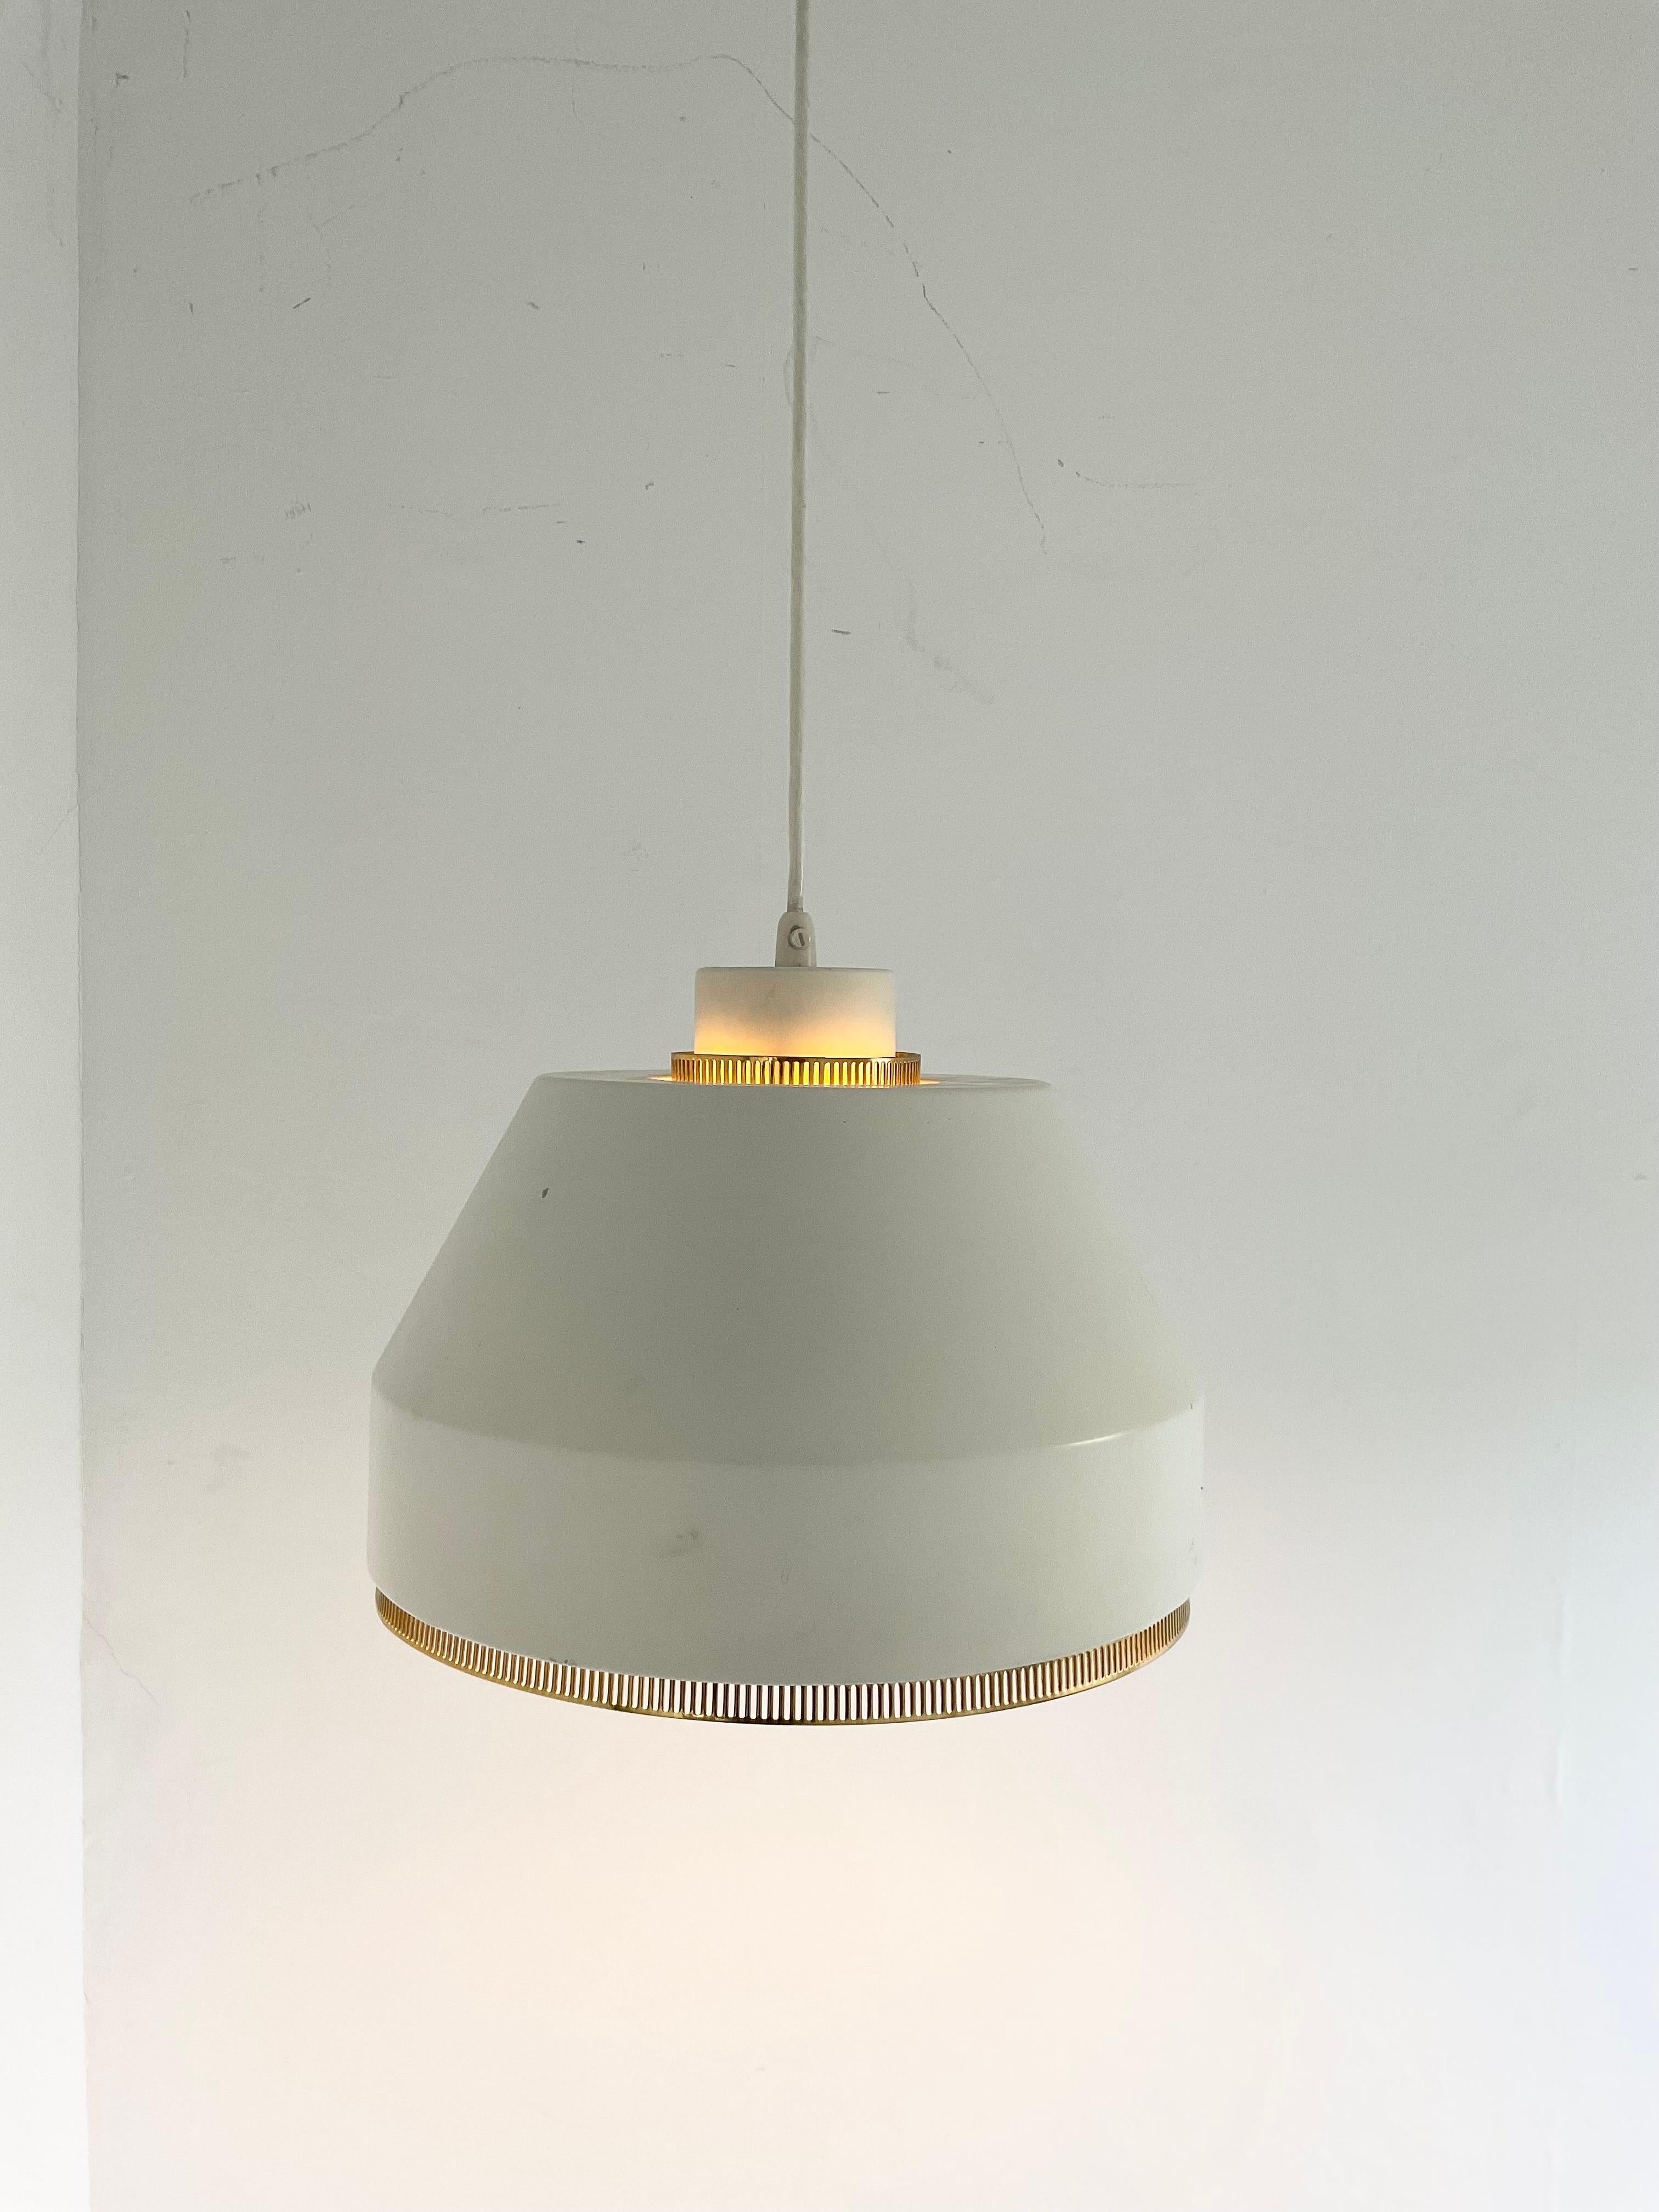 Lampe suspendue 'AMA 500' avec détails en laiton par Aino Aalto, conçue en 1941. Cette pièce a été fabriquée par la société finlandaise Valaistustyö.

Le design se caractérise par un abat-jour en aluminium peint en vieux blanc (ton chaud) avec de